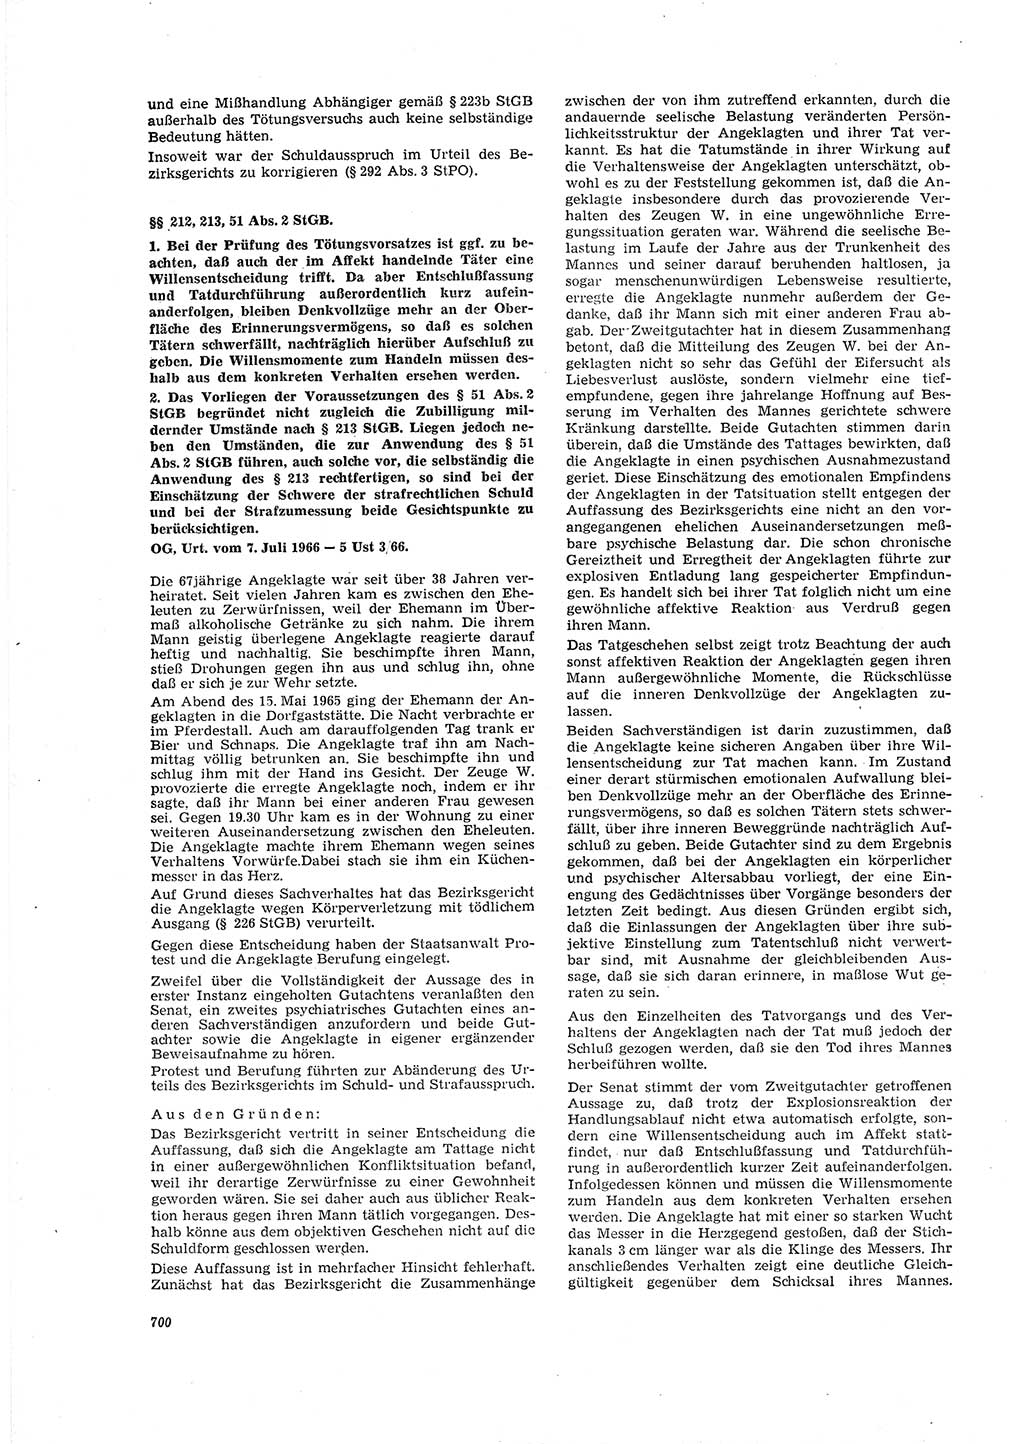 Neue Justiz (NJ), Zeitschrift für Recht und Rechtswissenschaft [Deutsche Demokratische Republik (DDR)], 20. Jahrgang 1966, Seite 700 (NJ DDR 1966, S. 700)